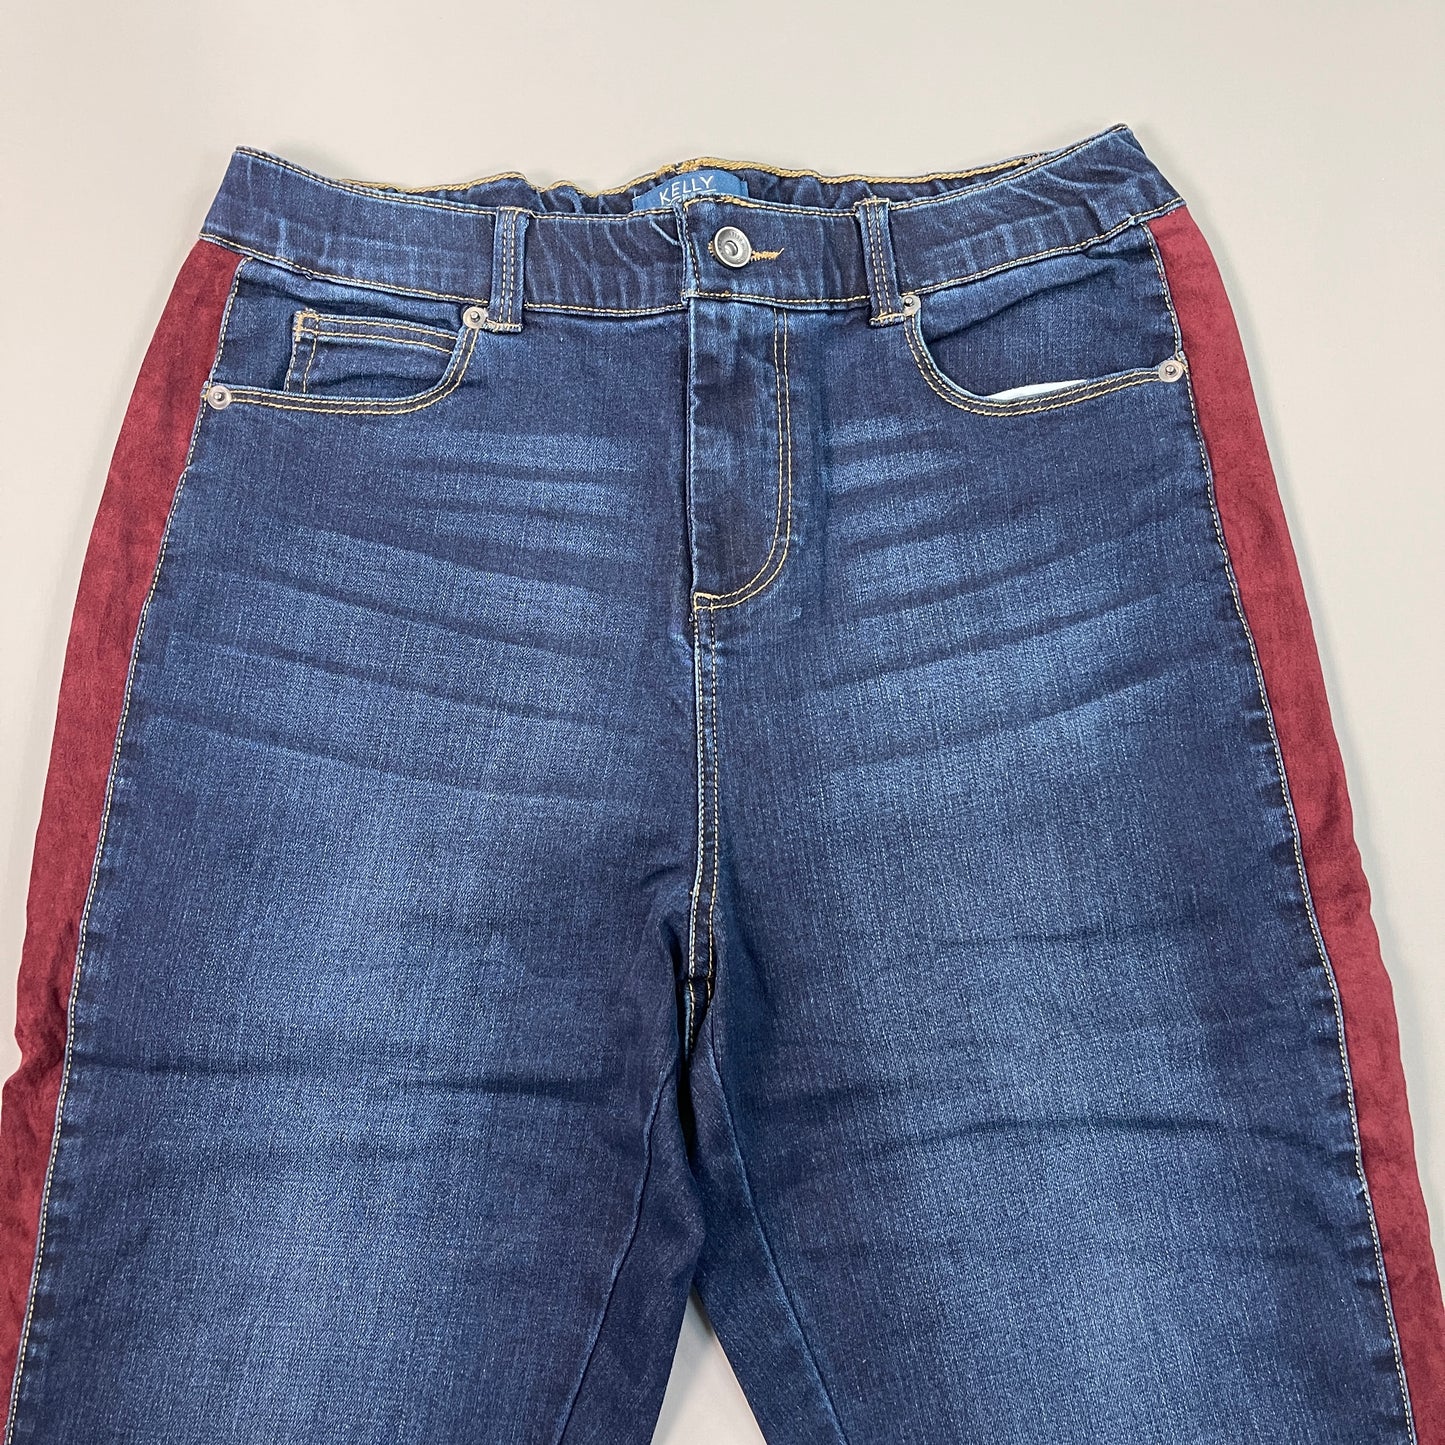 CLINTON KELLY Frayed Hem Jeans Women's Sz 10 Regular Dark Wash, Maroon Striped Side(New)